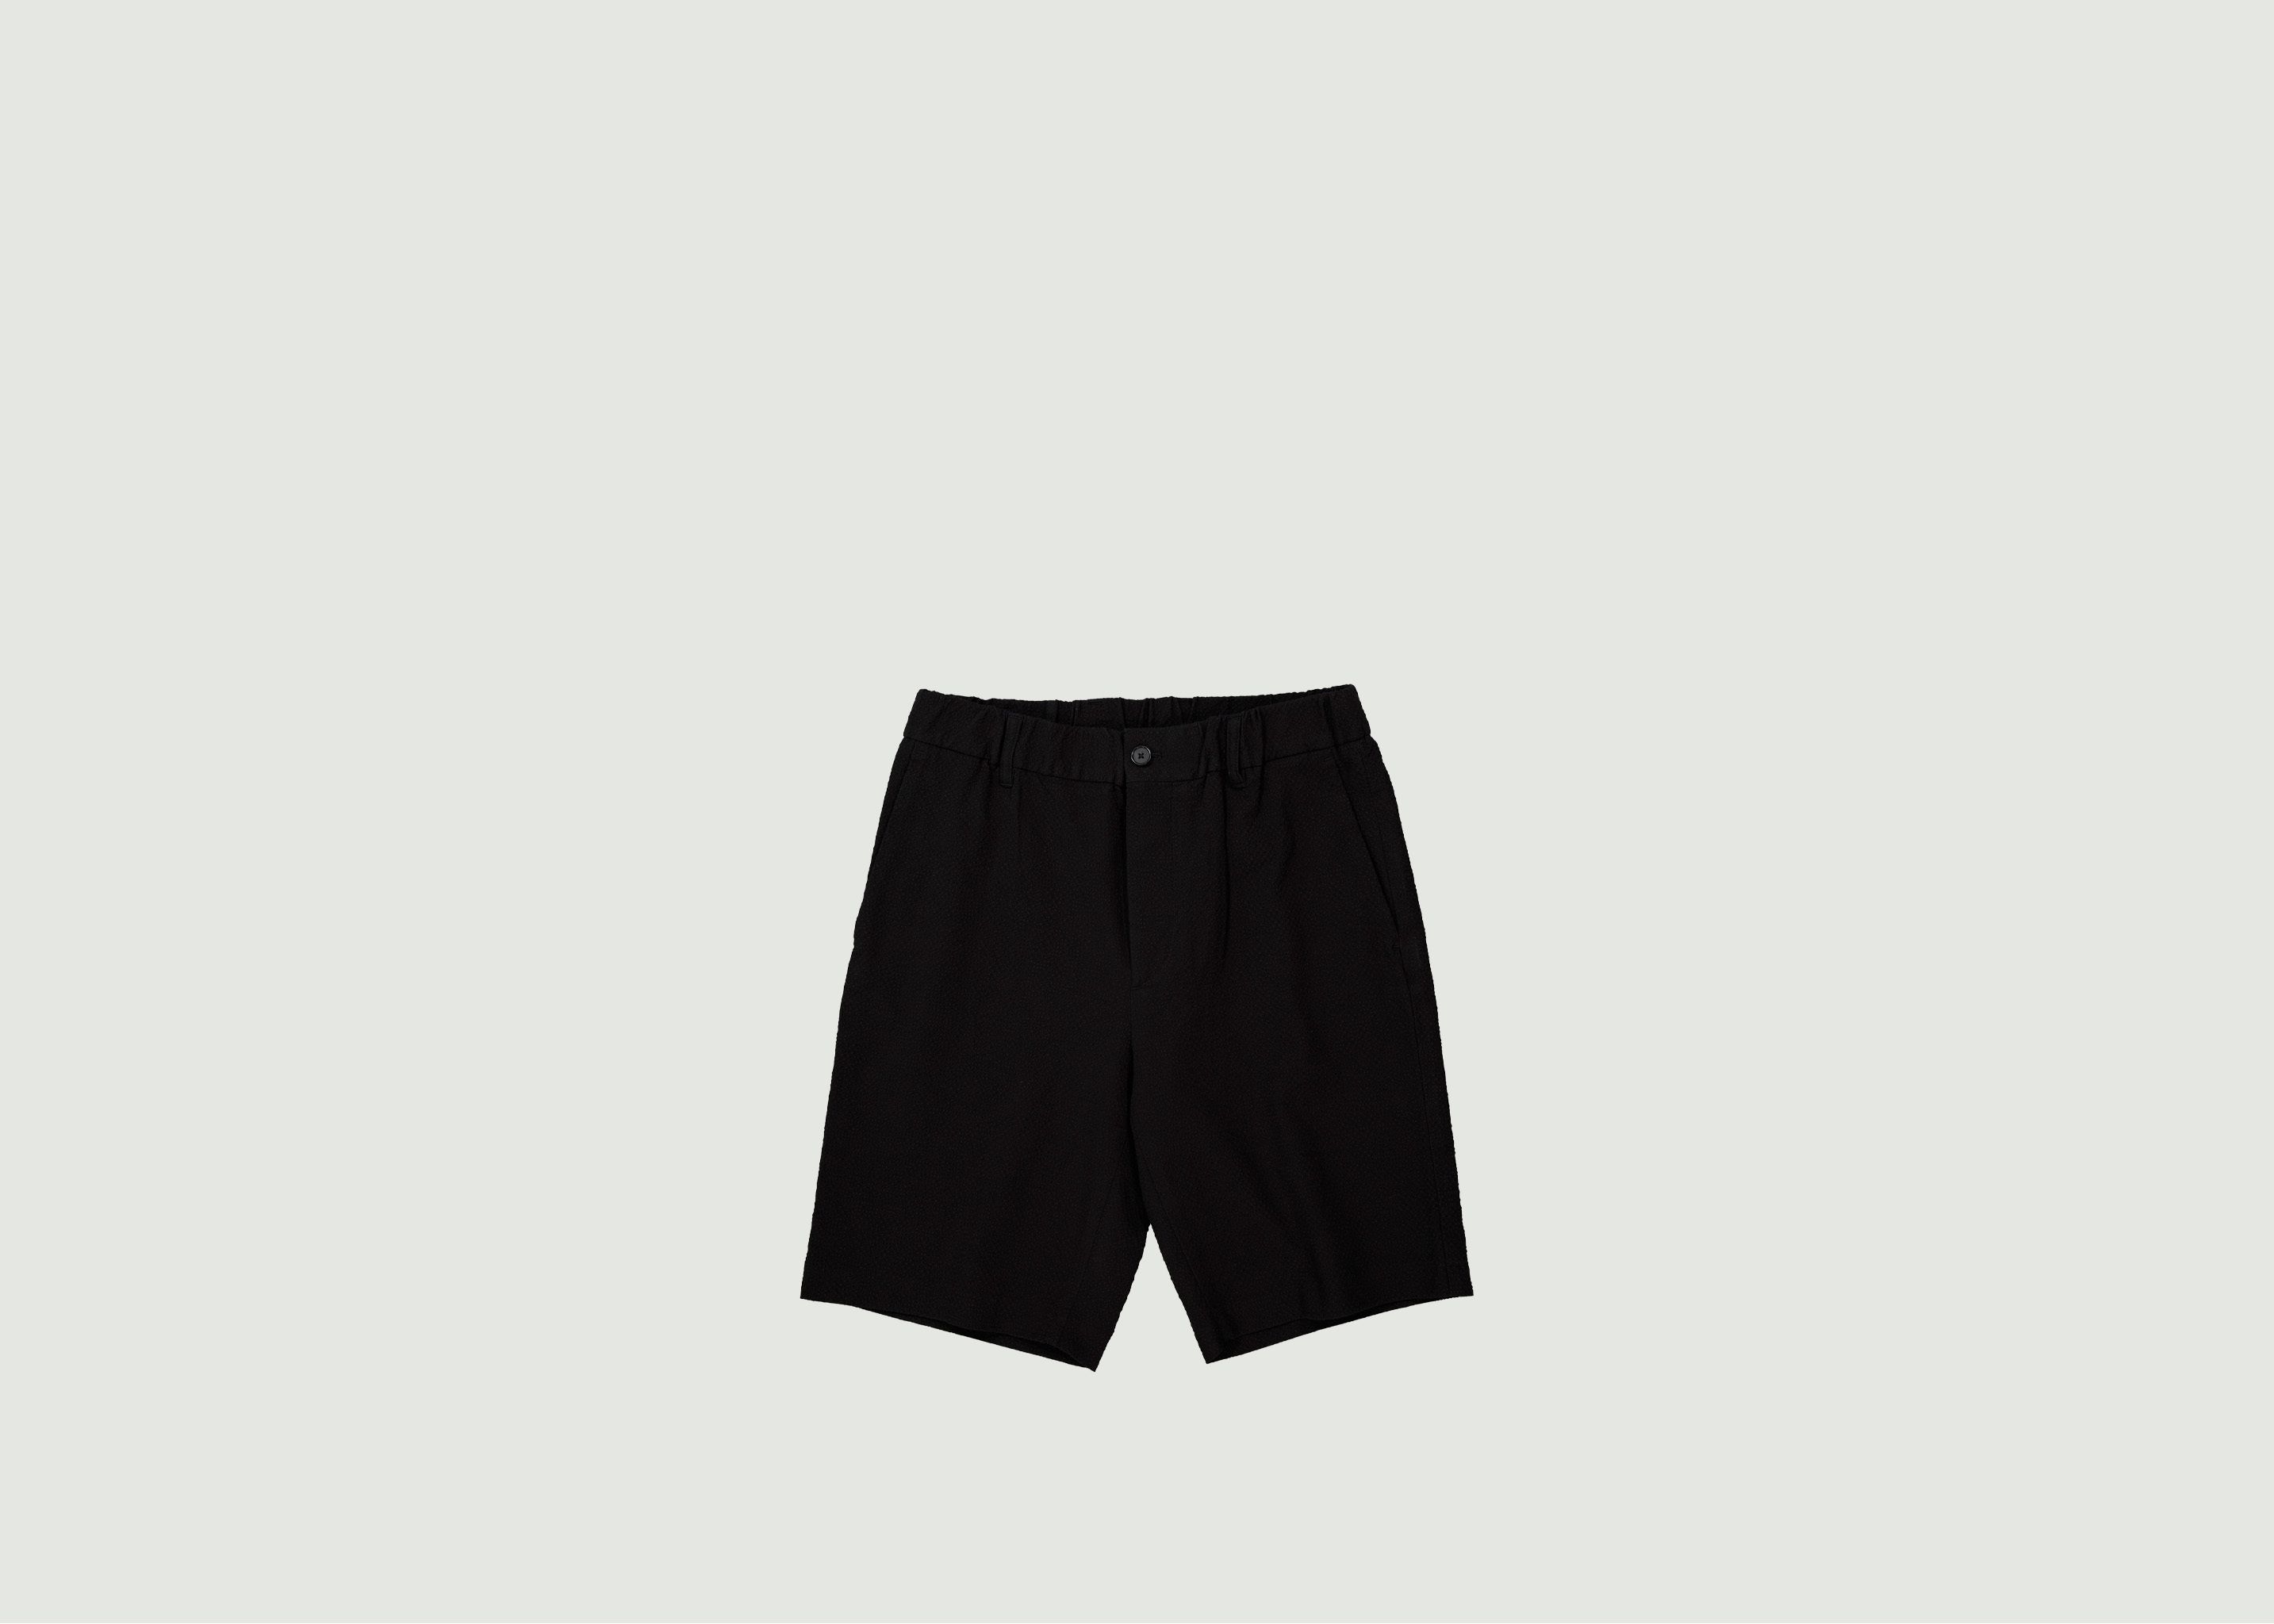 Theodor 1040 shorts - NN07